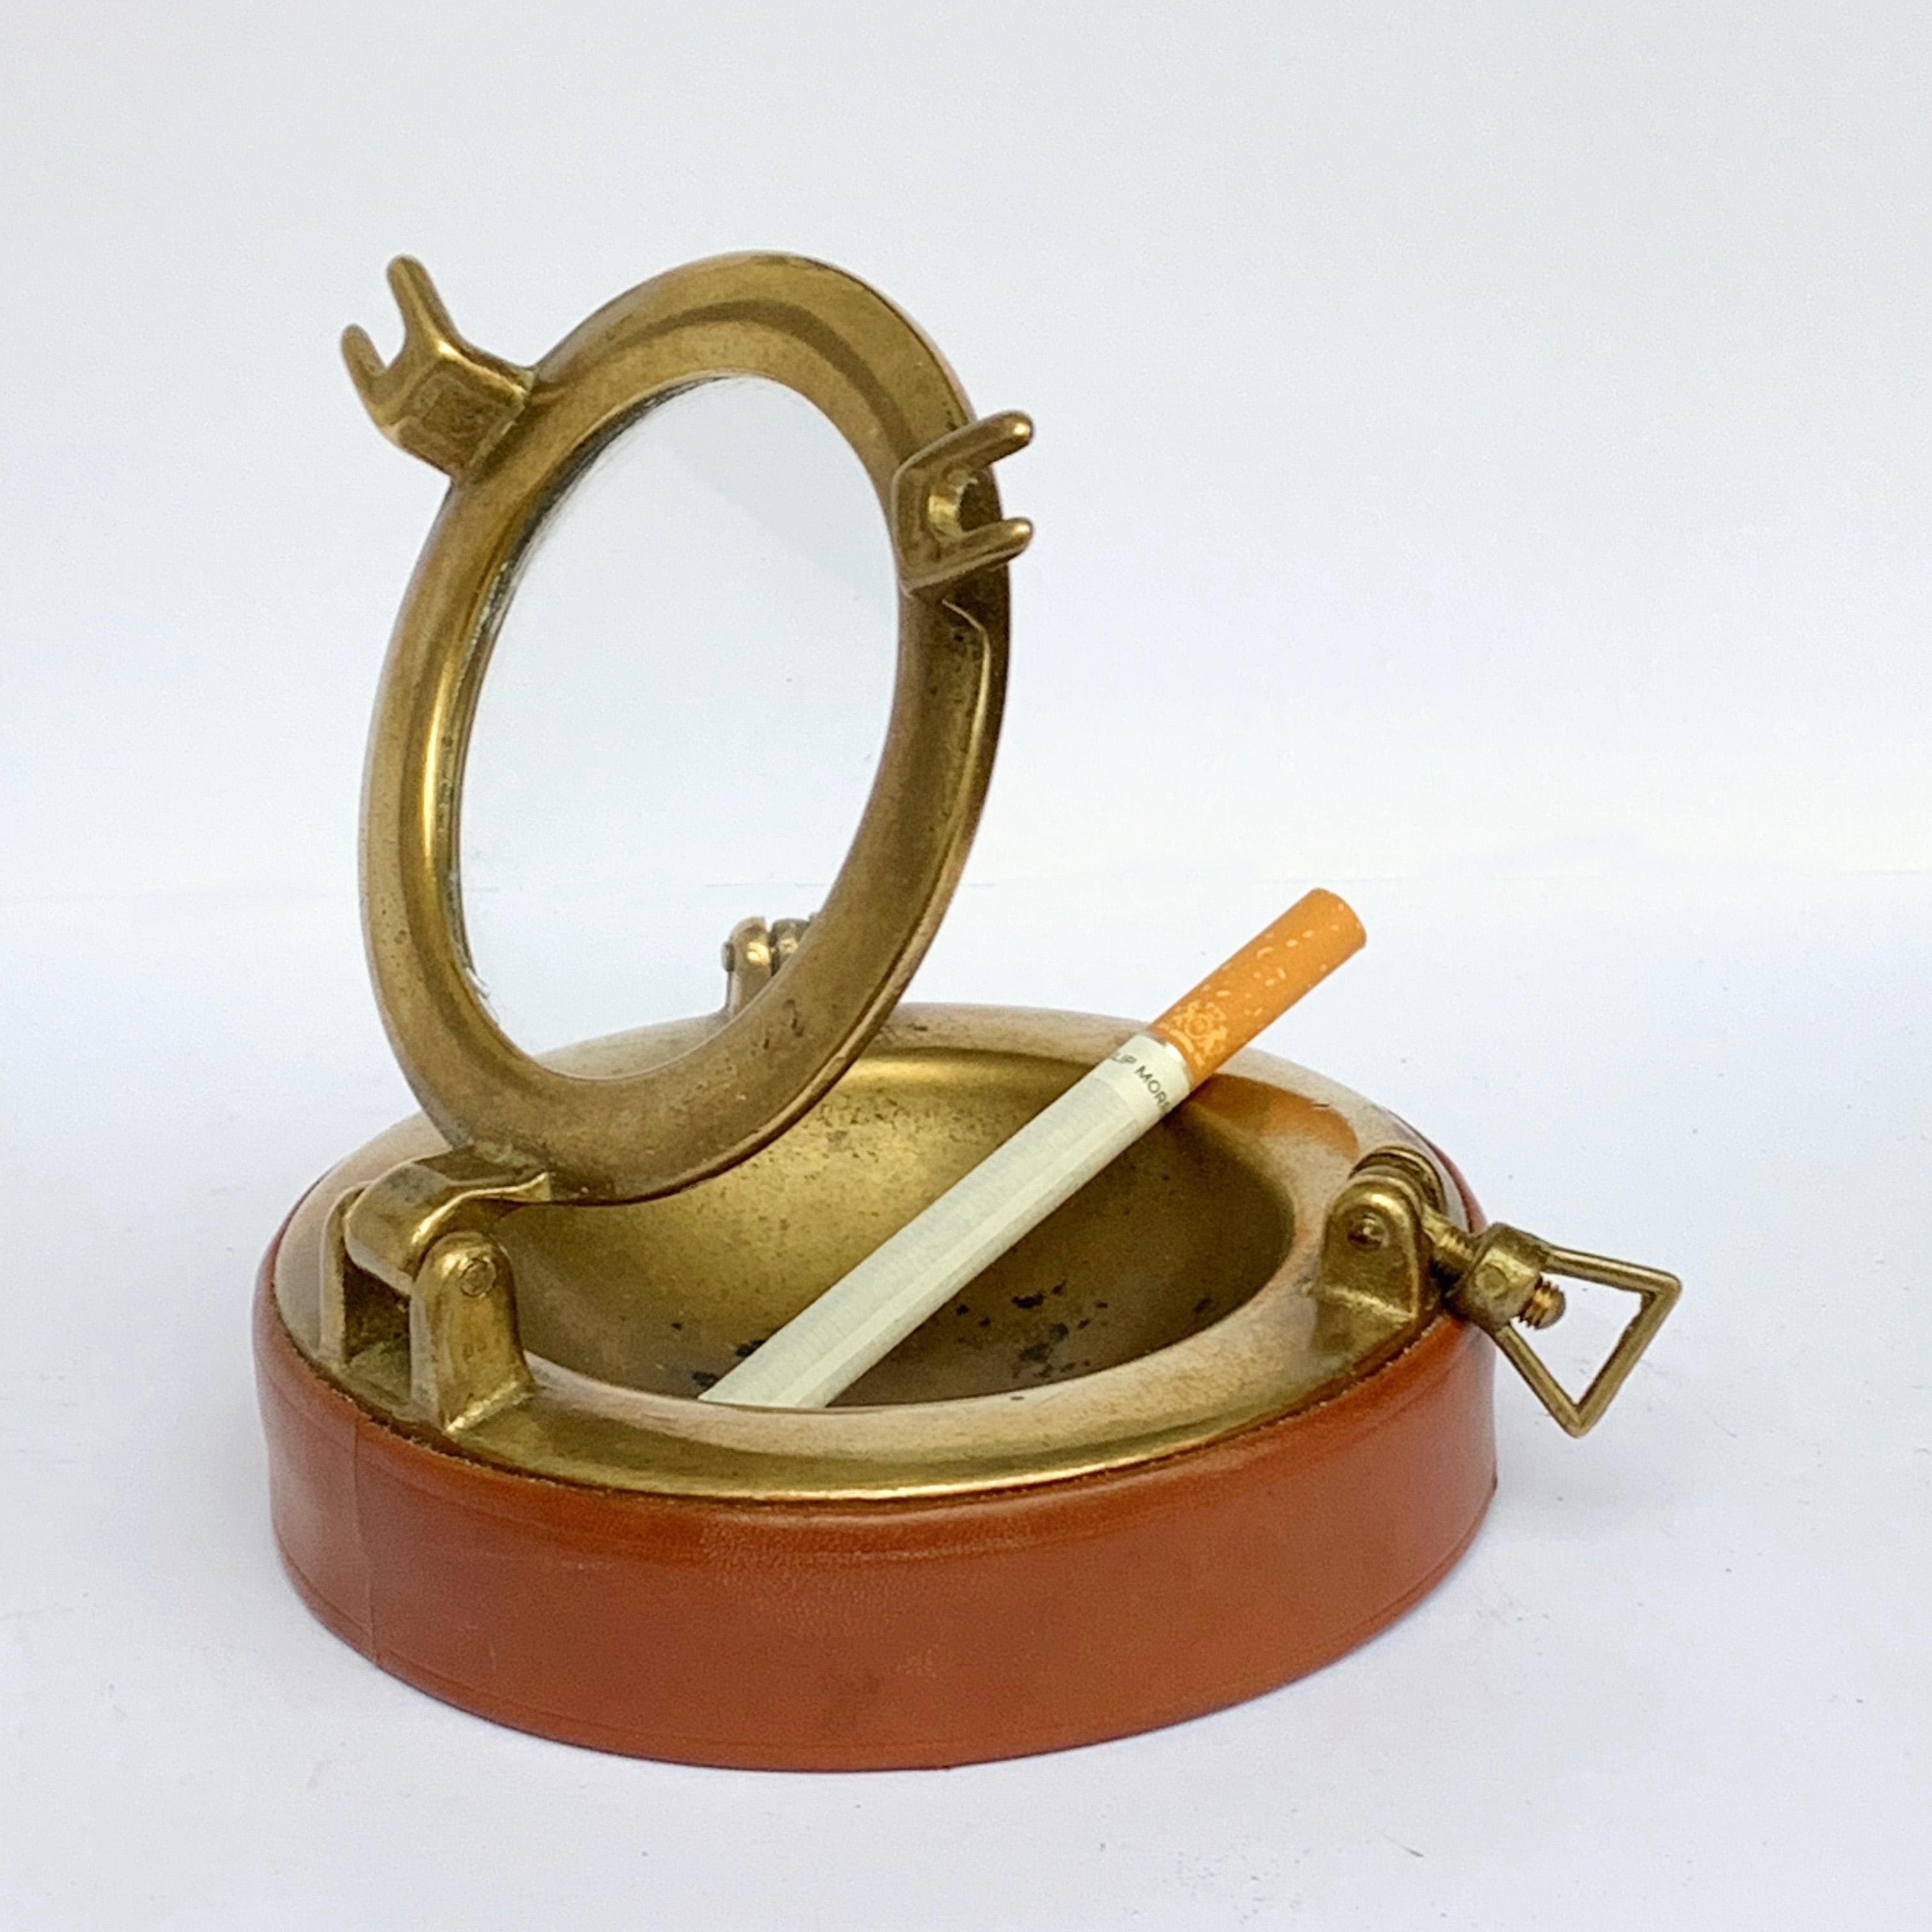 1960s ashtray